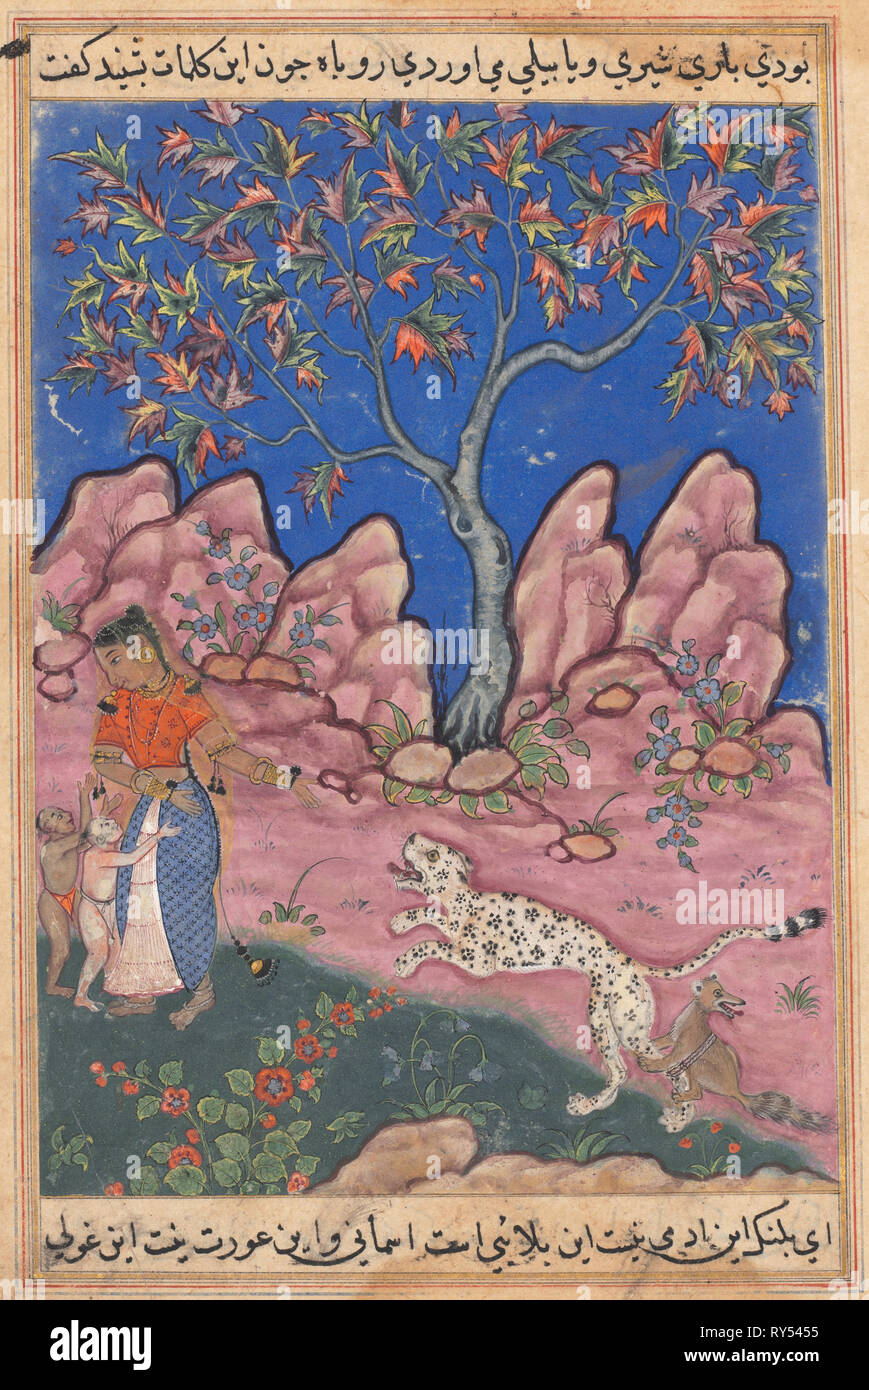 La page de contes d'un perroquet (Tuti-nama) : Trentième nuit : La femme conversant avec ses enfants, comme le léopard revient, encouragé par un renard qui est liée à sa jambe, ch. 1560. L'Inde, l'Empire moghol, règne d'Akbar, 16ème siècle. L'aquarelle, l'encre opaque et d'or sur papier Banque D'Images